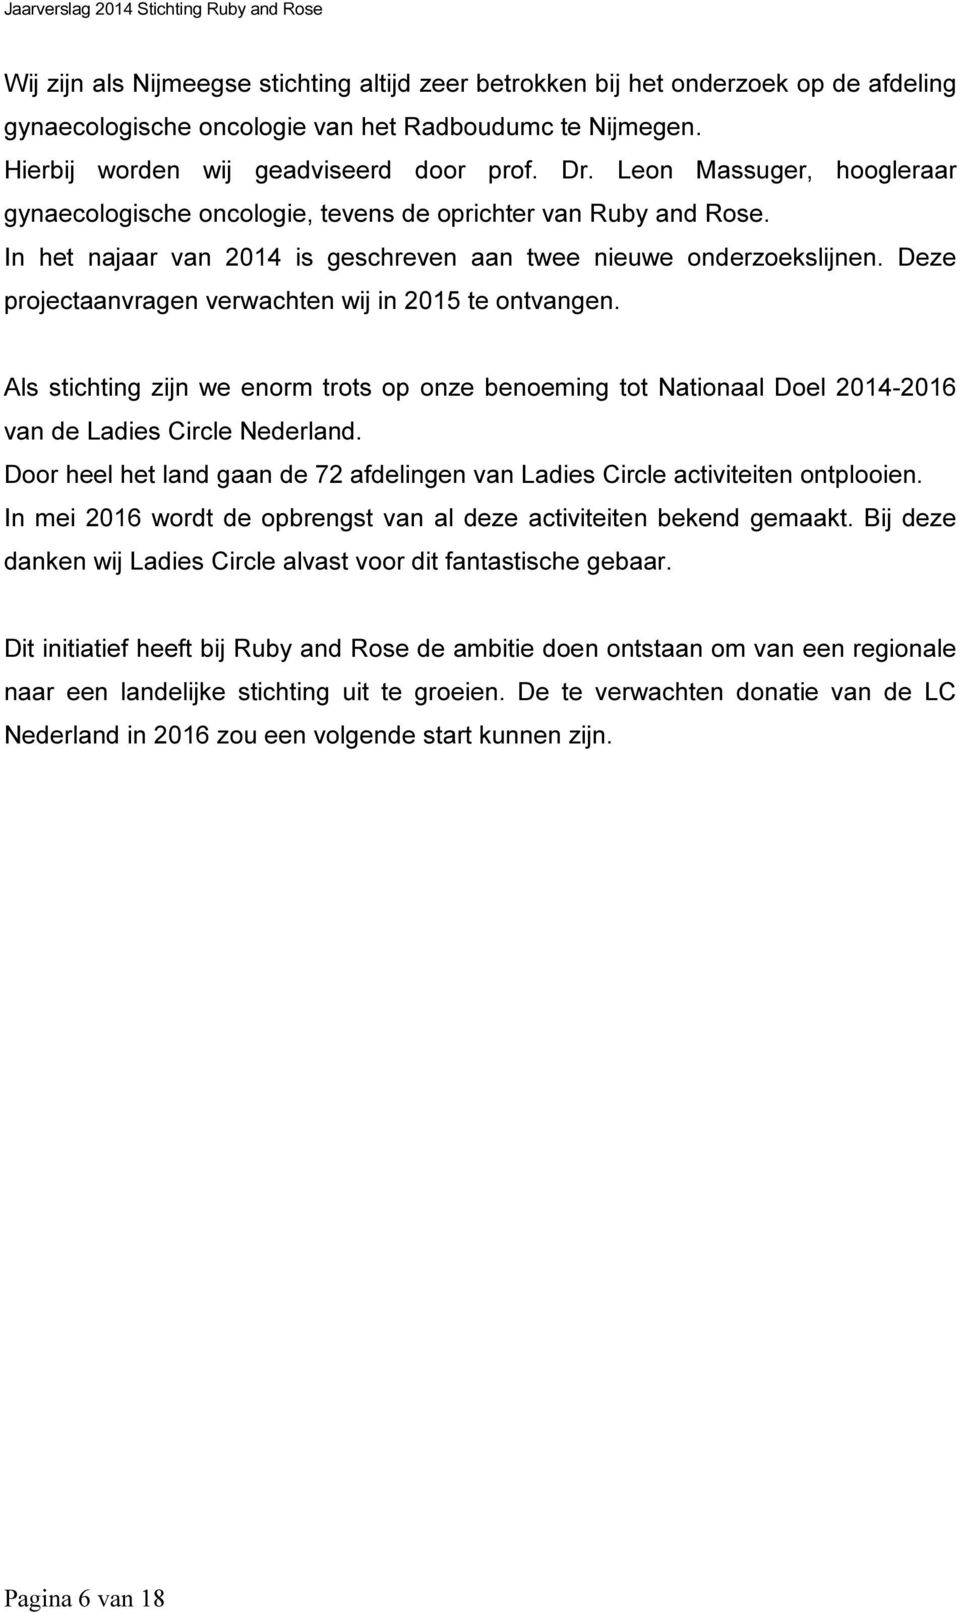 Deze projectaanvragen verwachten wij in 2015 te ontvangen. Als stichting zijn we enorm trots op onze benoeming tot Nationaal Doel 2014-2016 van de Ladies Circle Nederland.